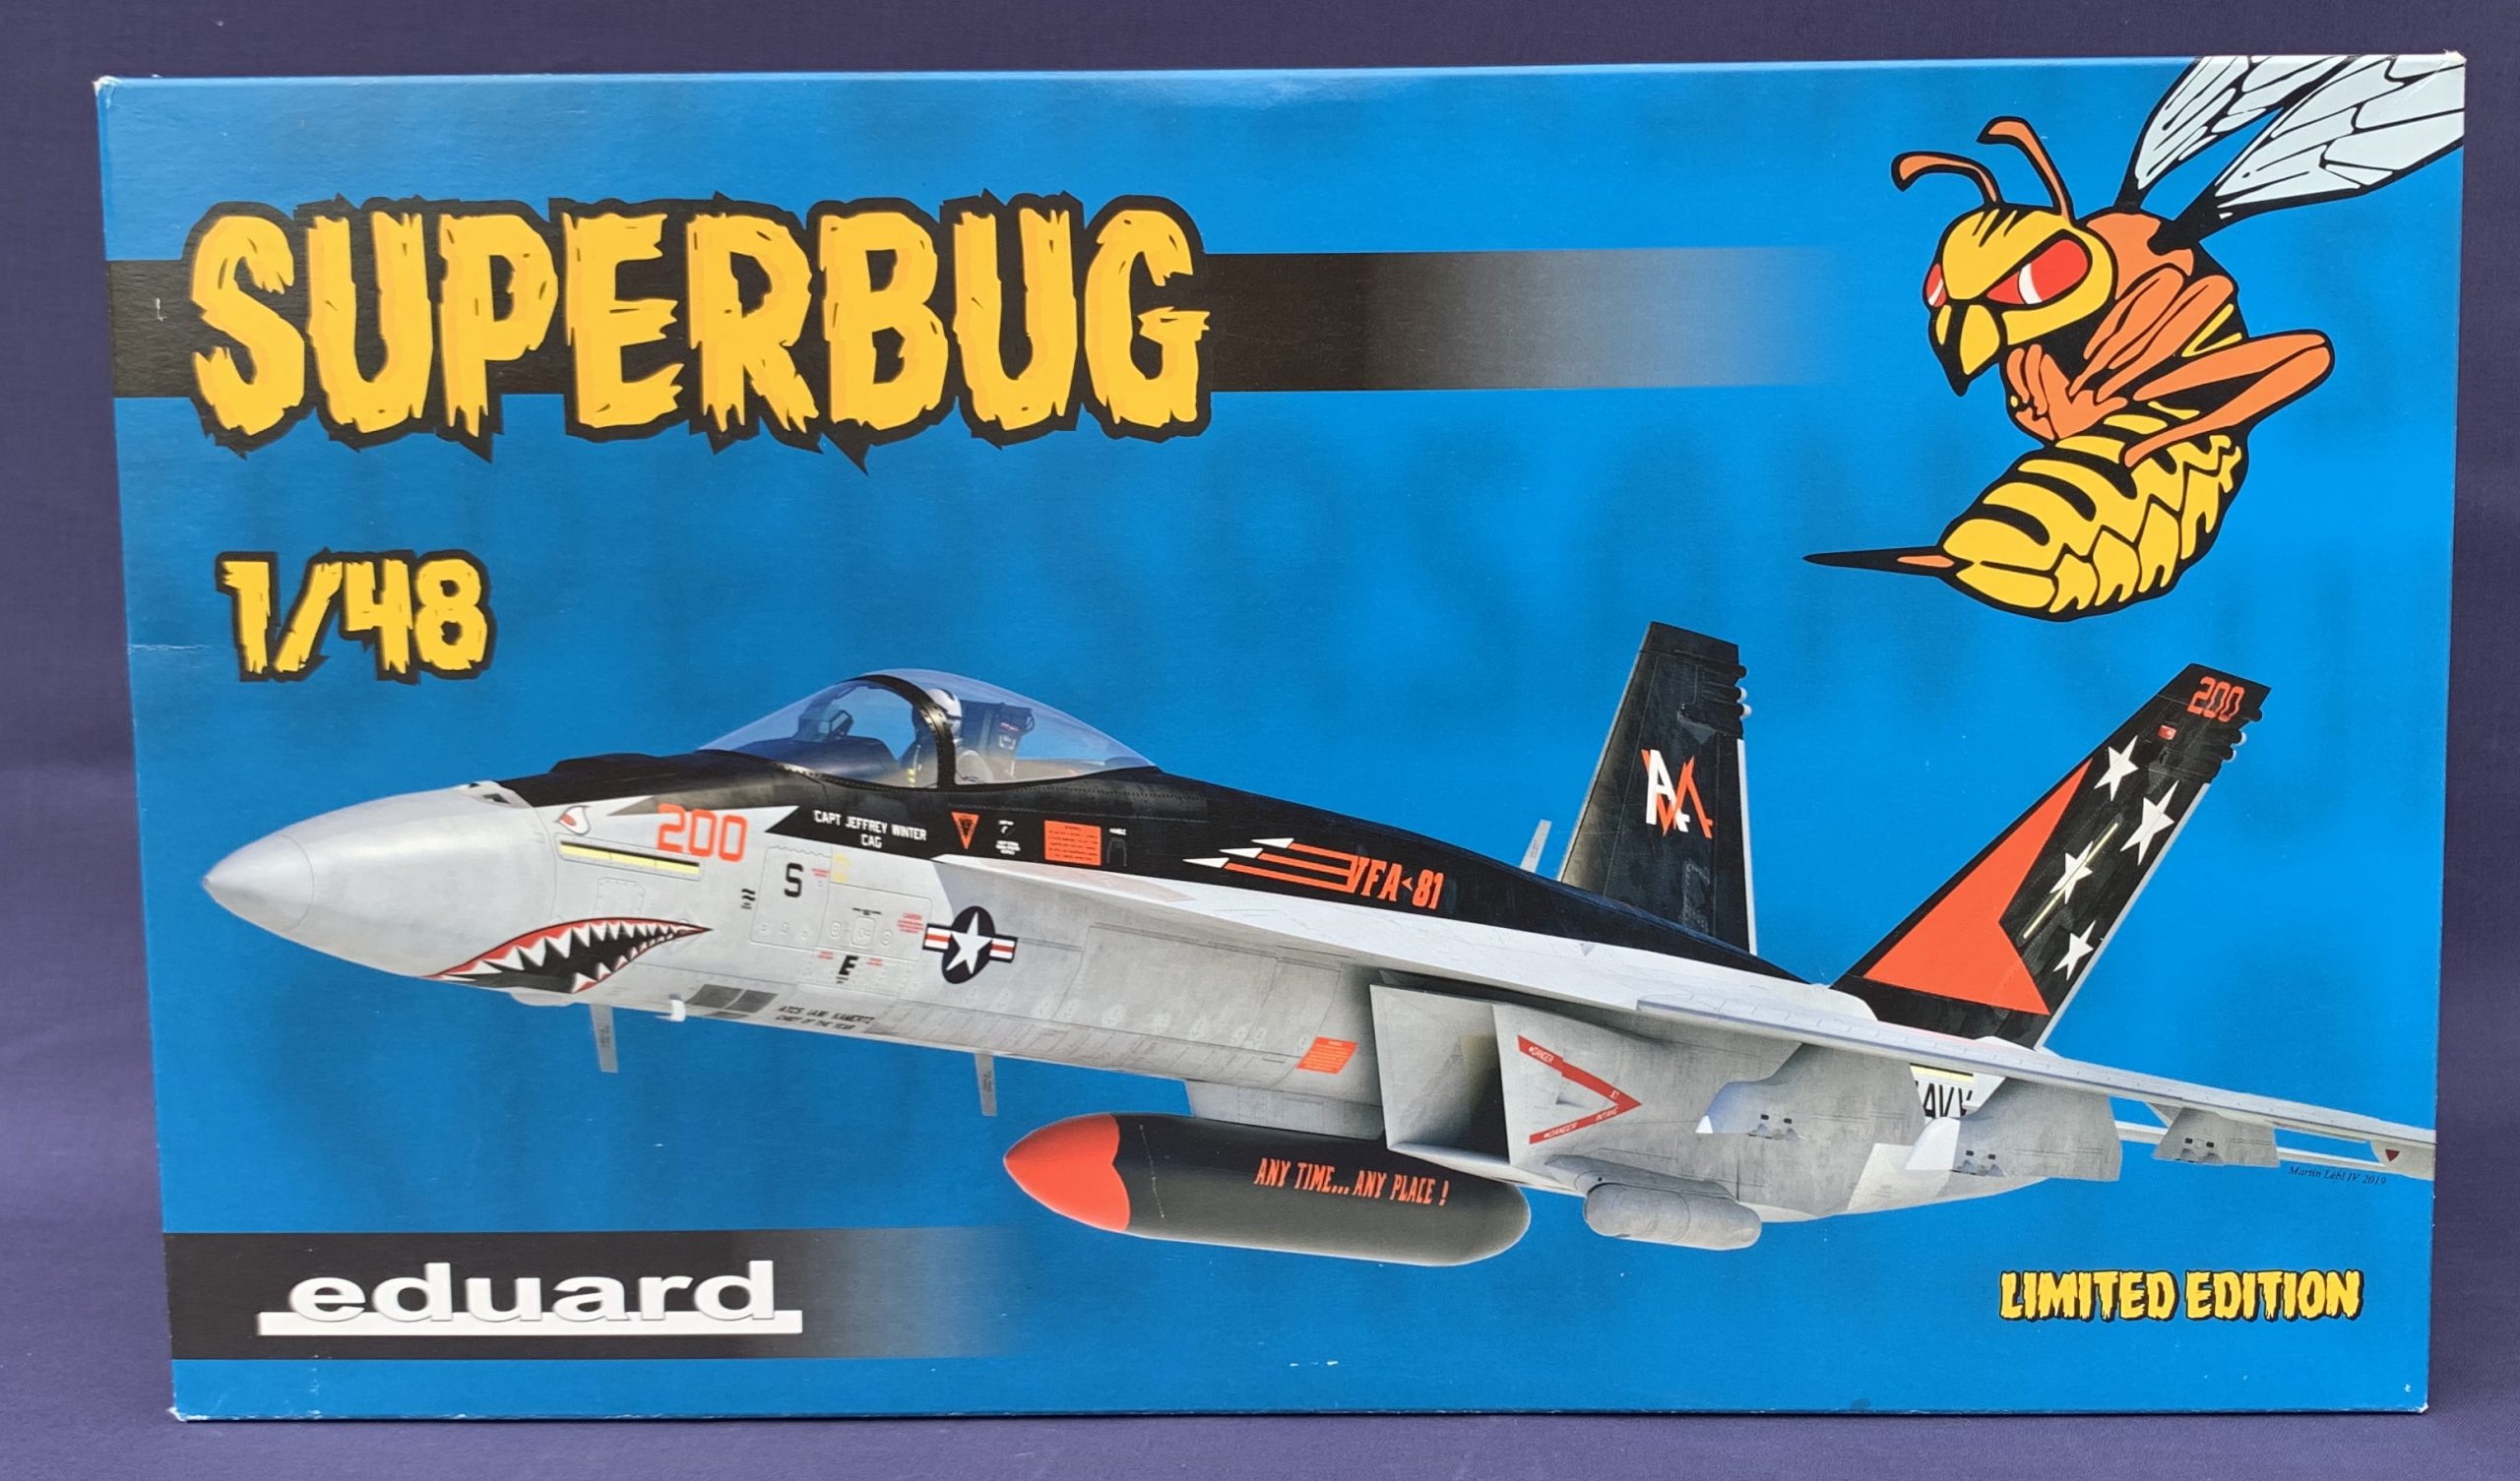 eduard F/A-18E Superhornet “SUPERBUG” 1:48